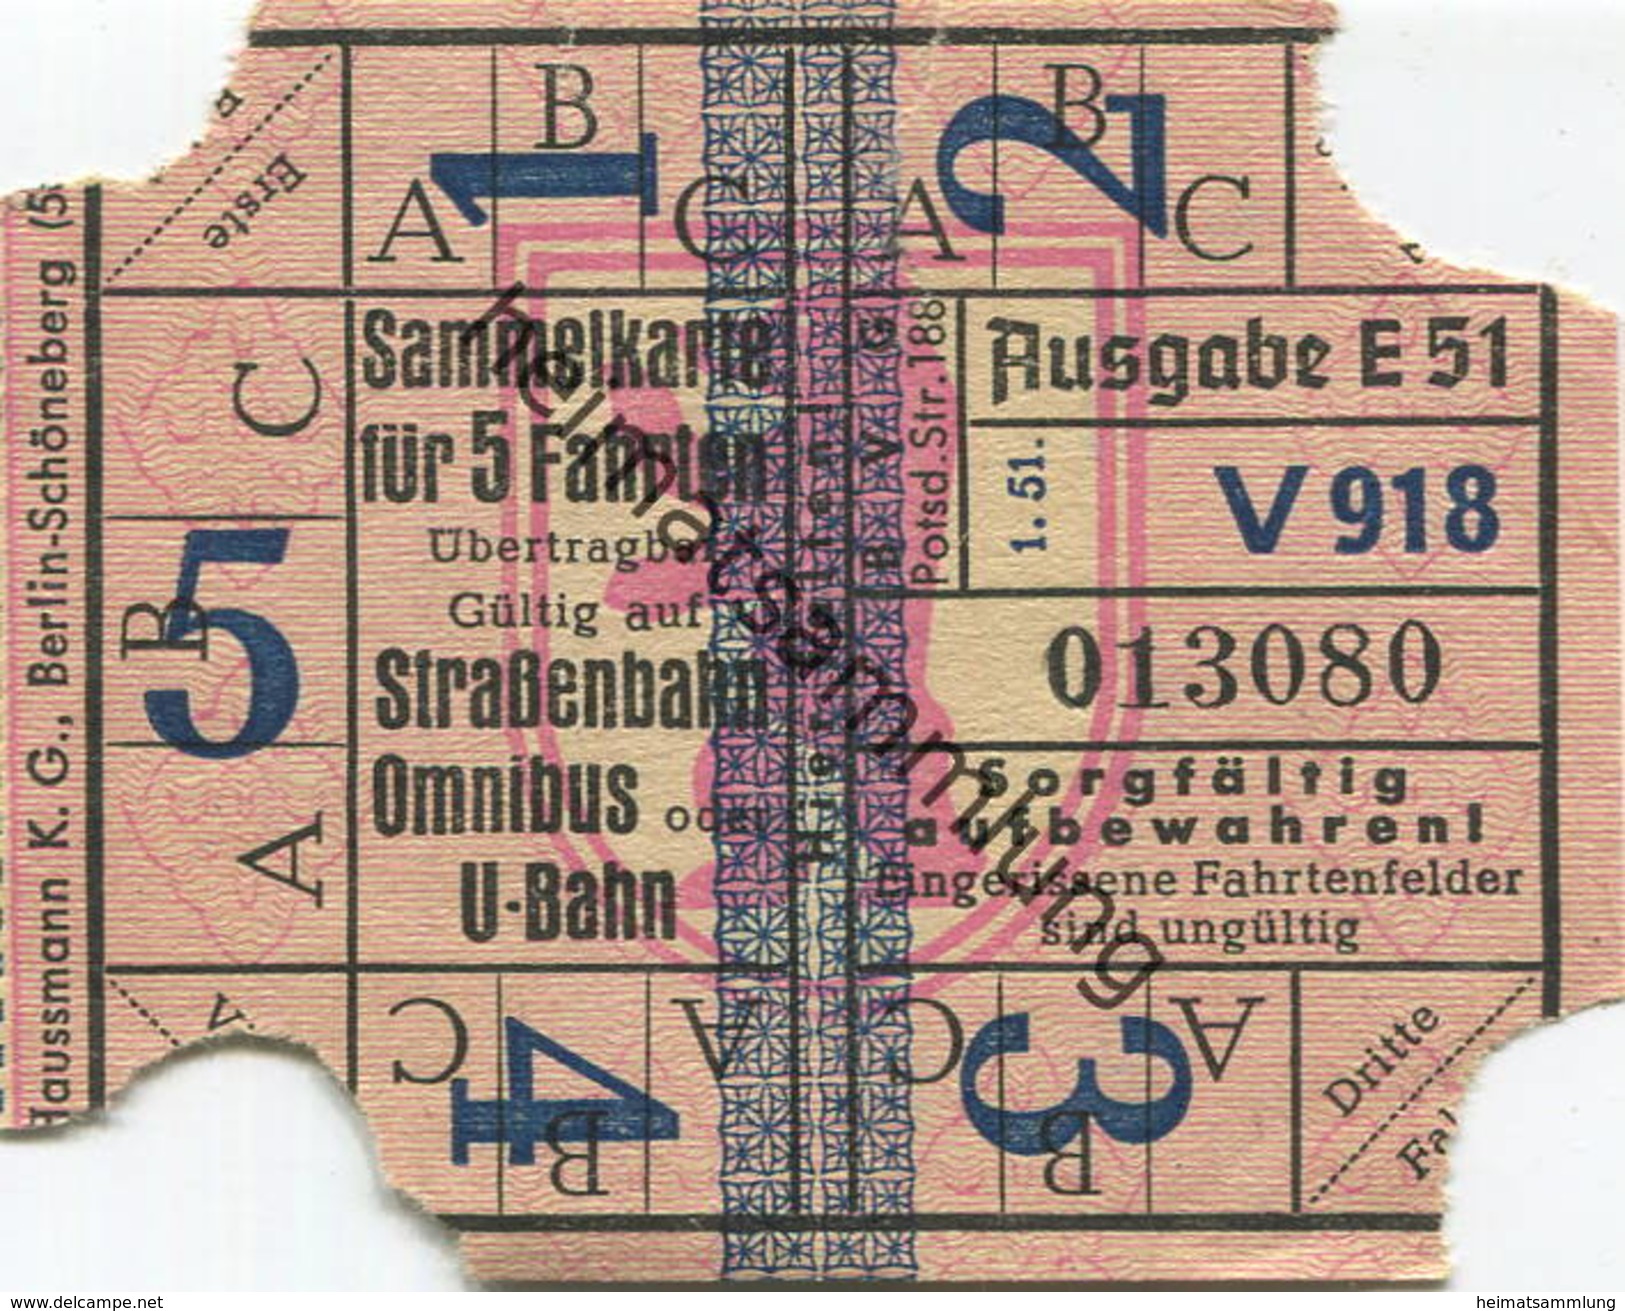 Deutschland - Berlin - BVG - Sammelkarte Für 5 Fahrten 1951 - Gültig Auf Strassenbahn Omnibus Oder U-Bahn - Europe